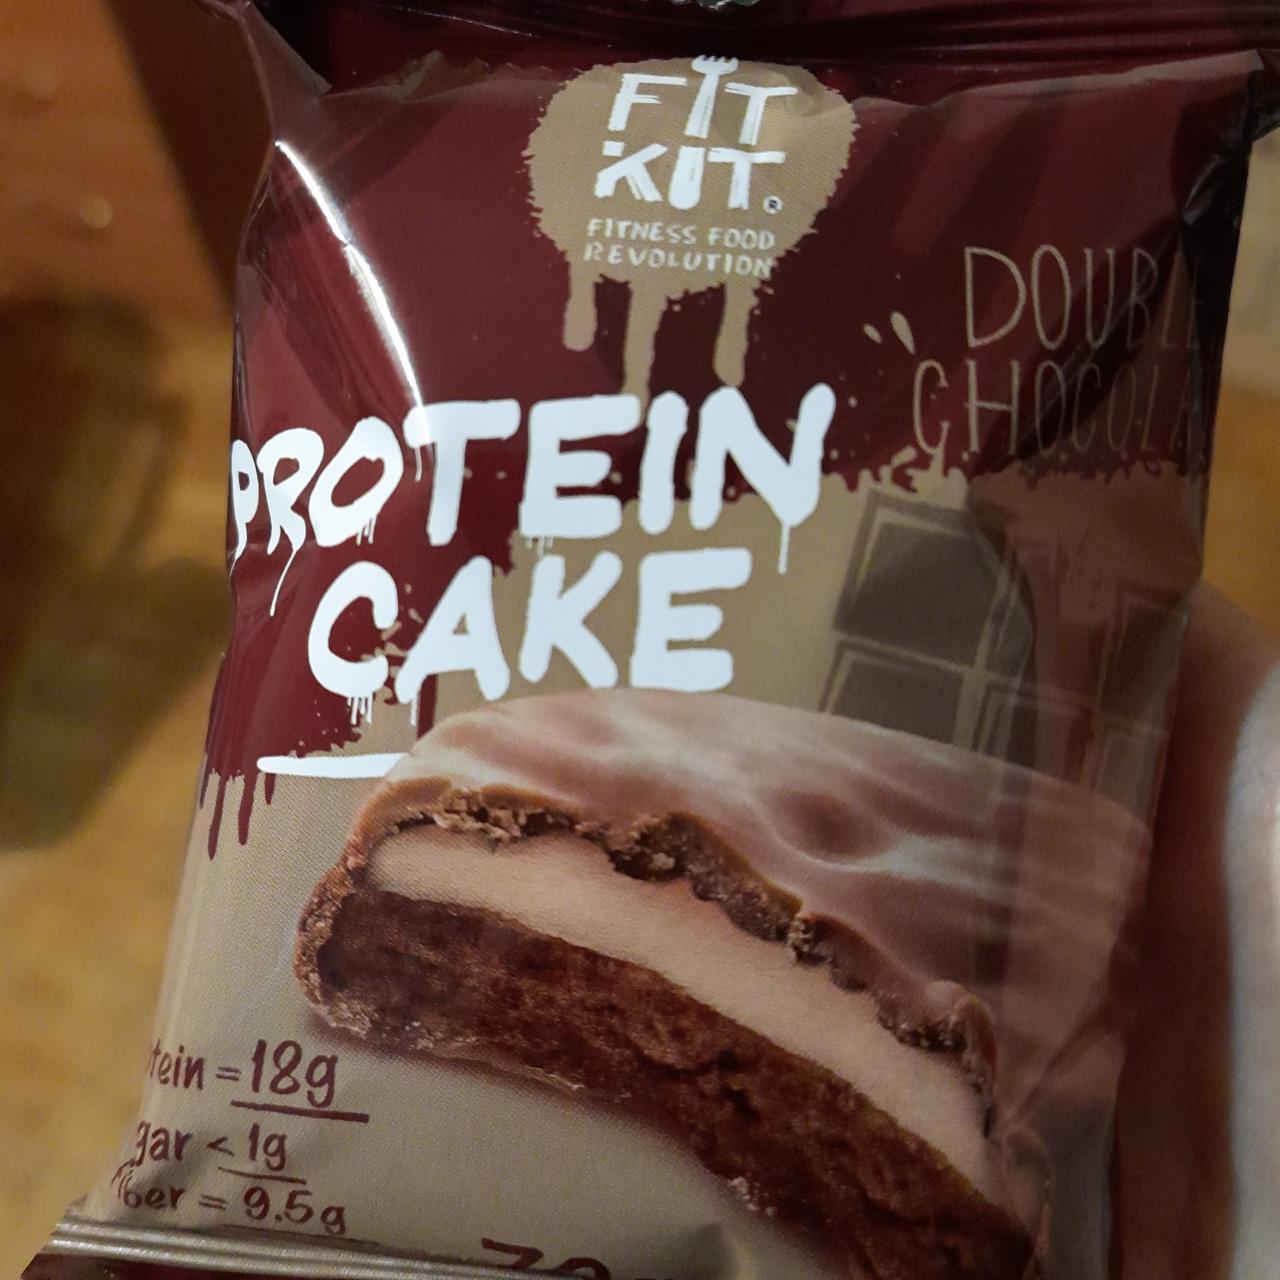 Фото - протеиновое печенье Protein cake двойной шоколад с суфле Fit Kit